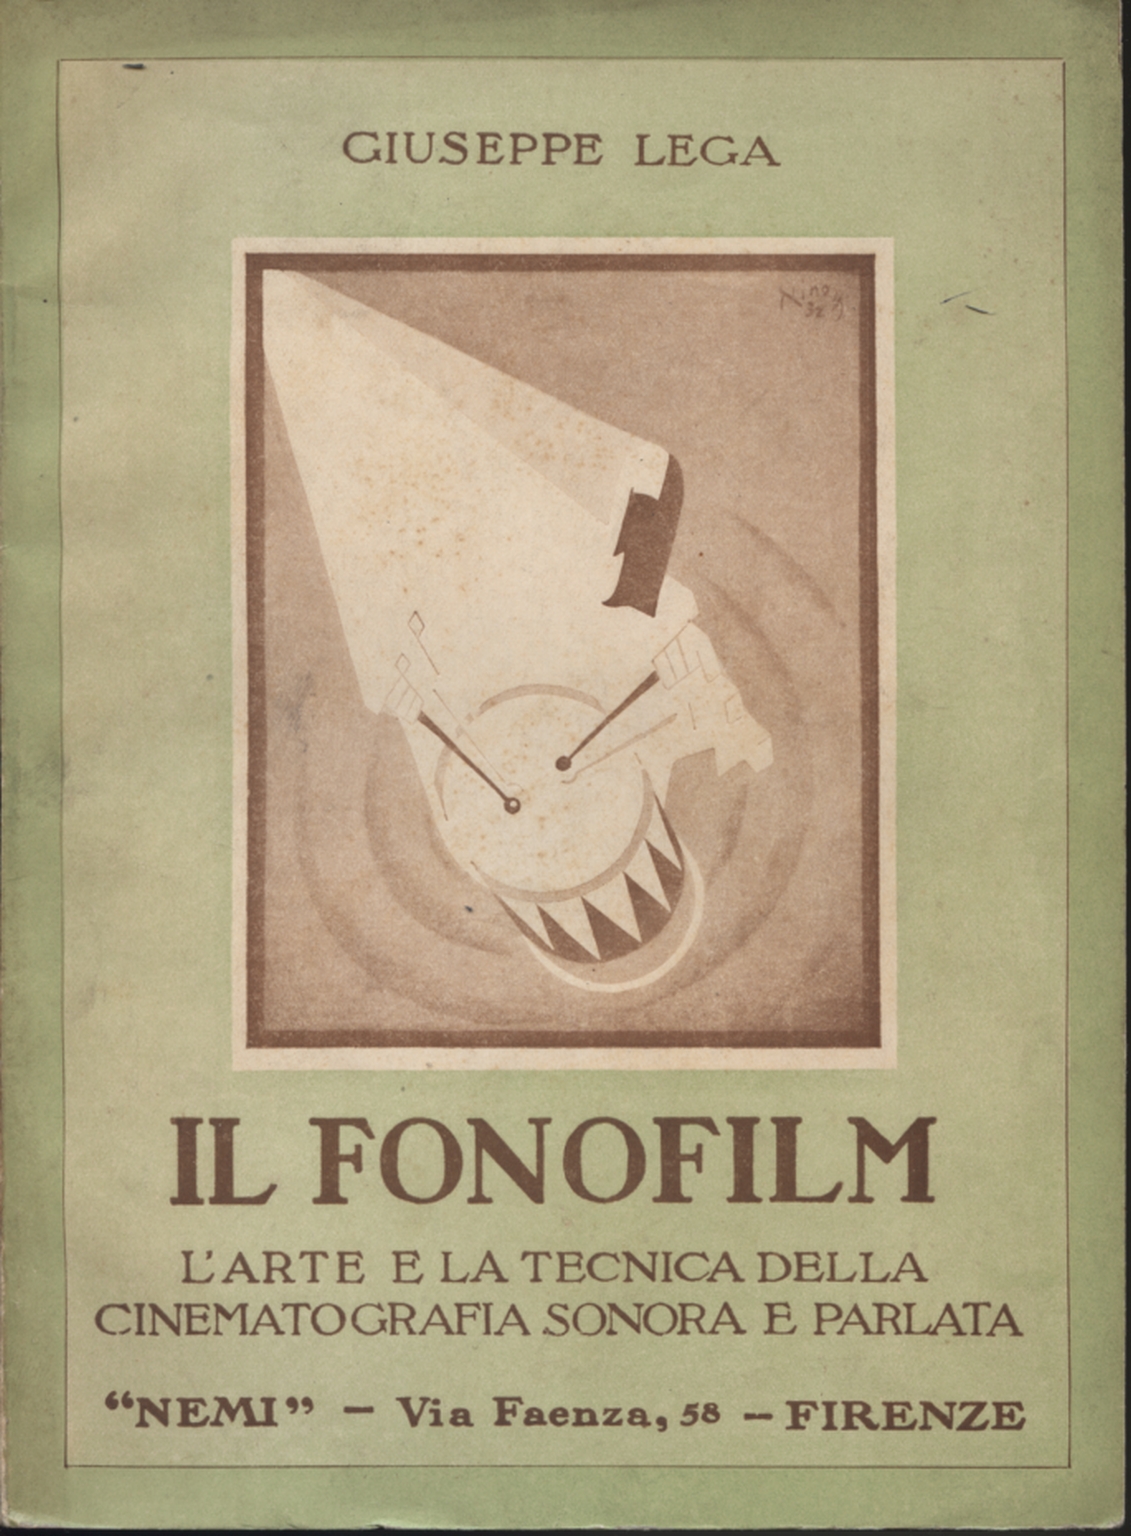 The phonofilm, Giuseppe Lega